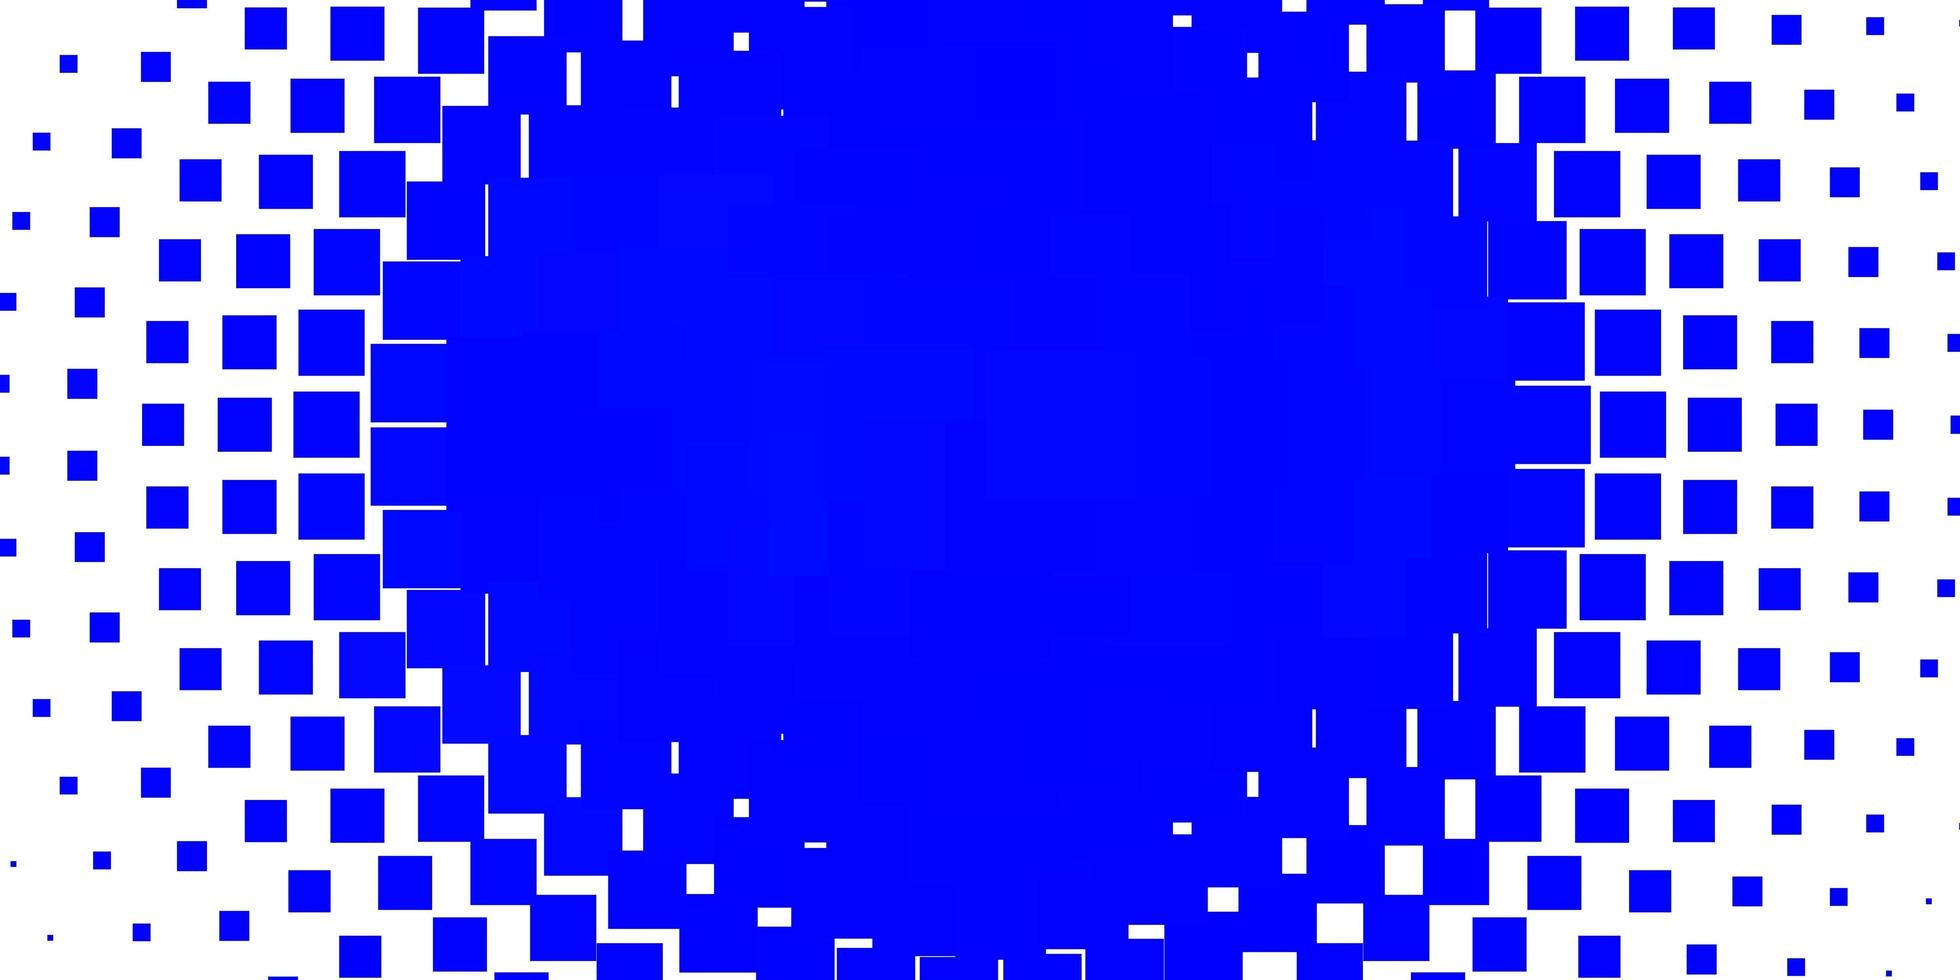 padrão de vetor azul claro em estilo quadrado. ilustração com um conjunto de retângulos gradientes. padrão para comerciais, anúncios.